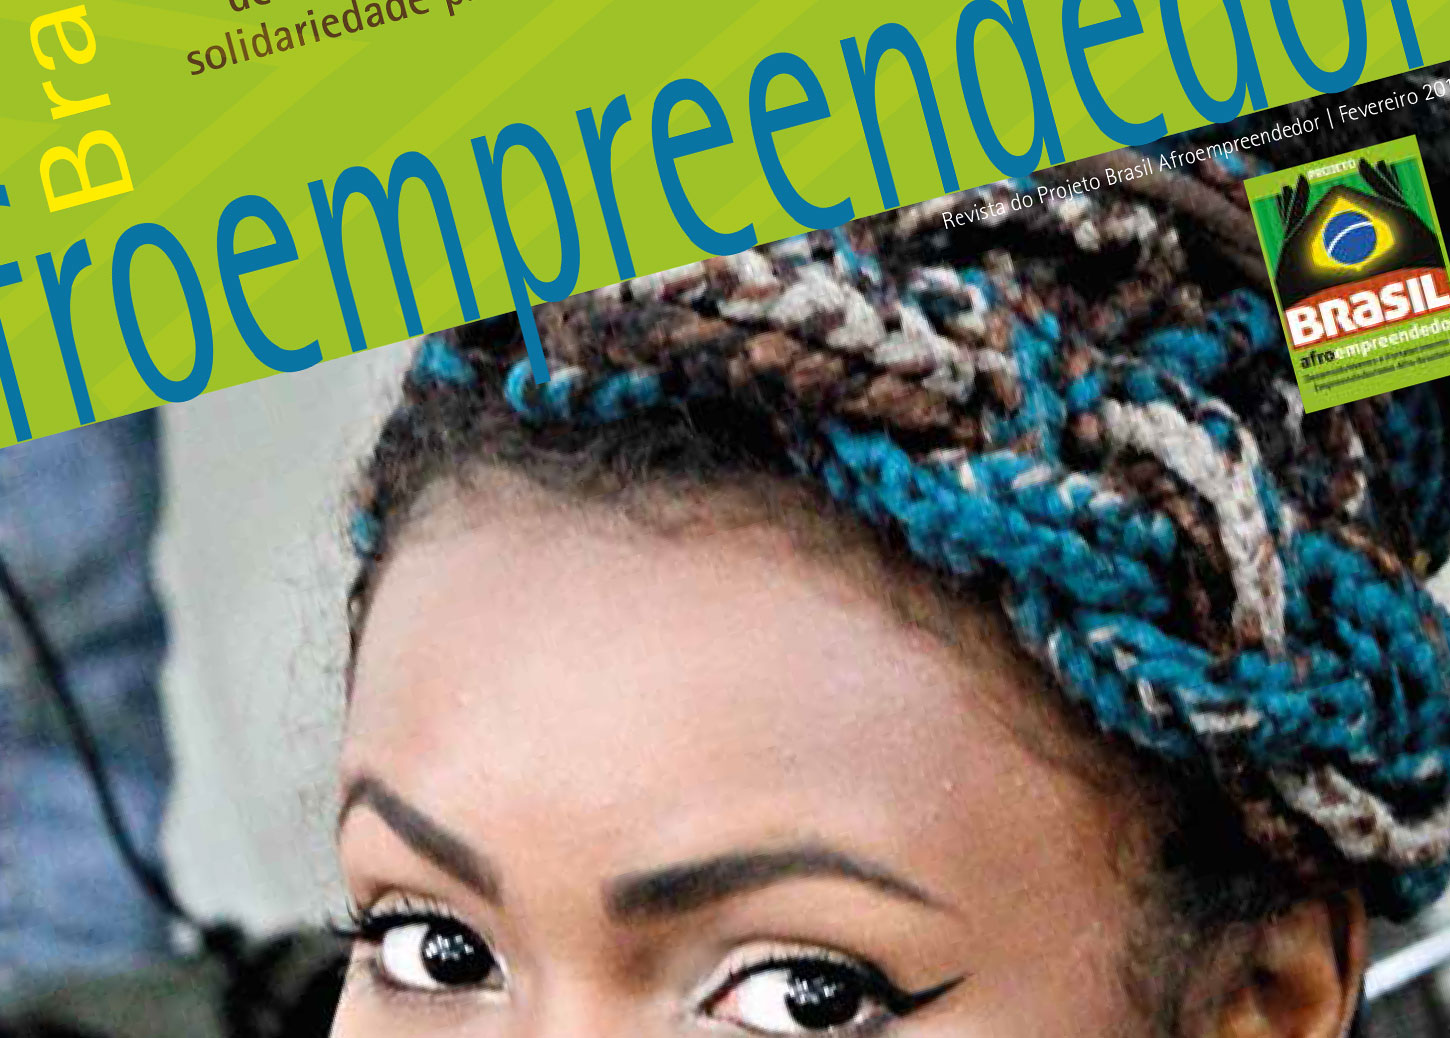 Saiu a Revista Brasil Afroempreendedor!